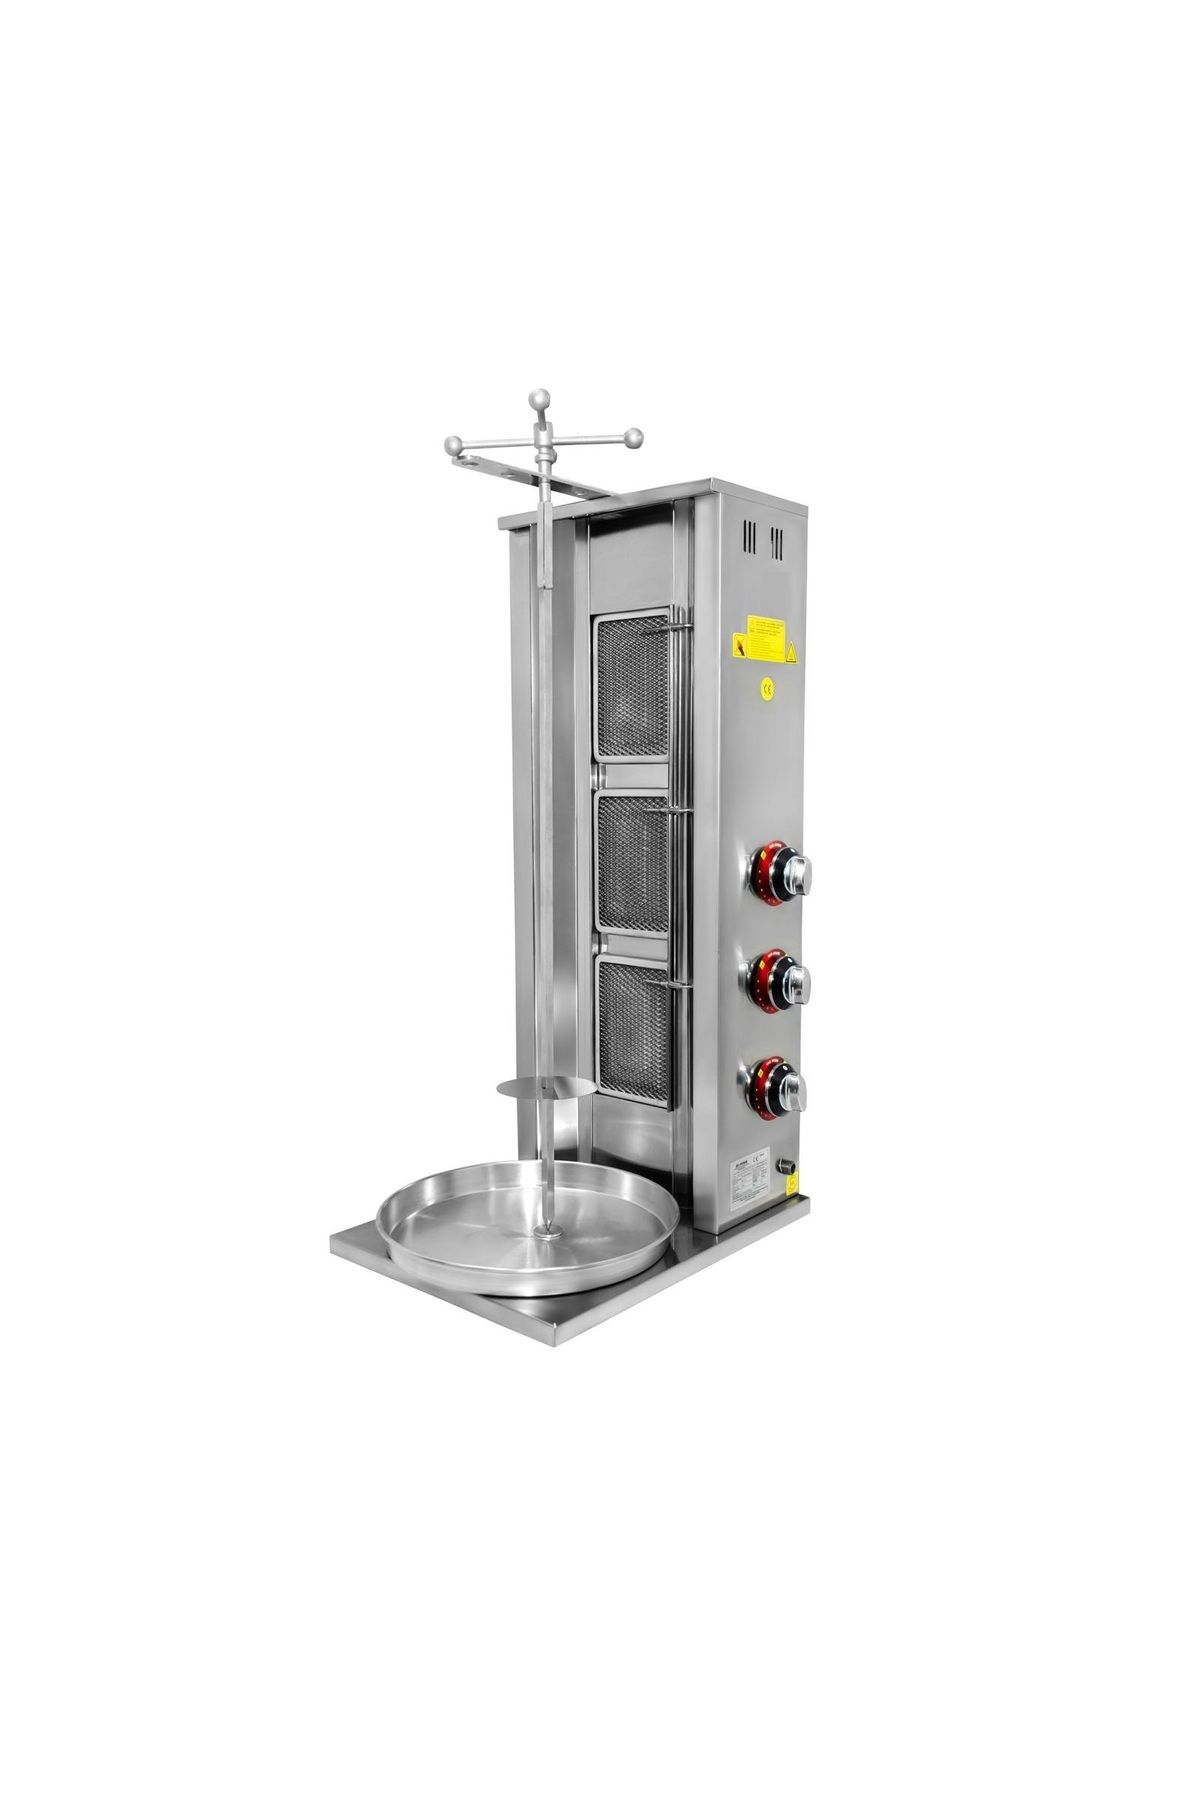 Emir Endüstriyel Mutfak Emir Döner Ocağı Makinası 3 Radyanlı Tüplü